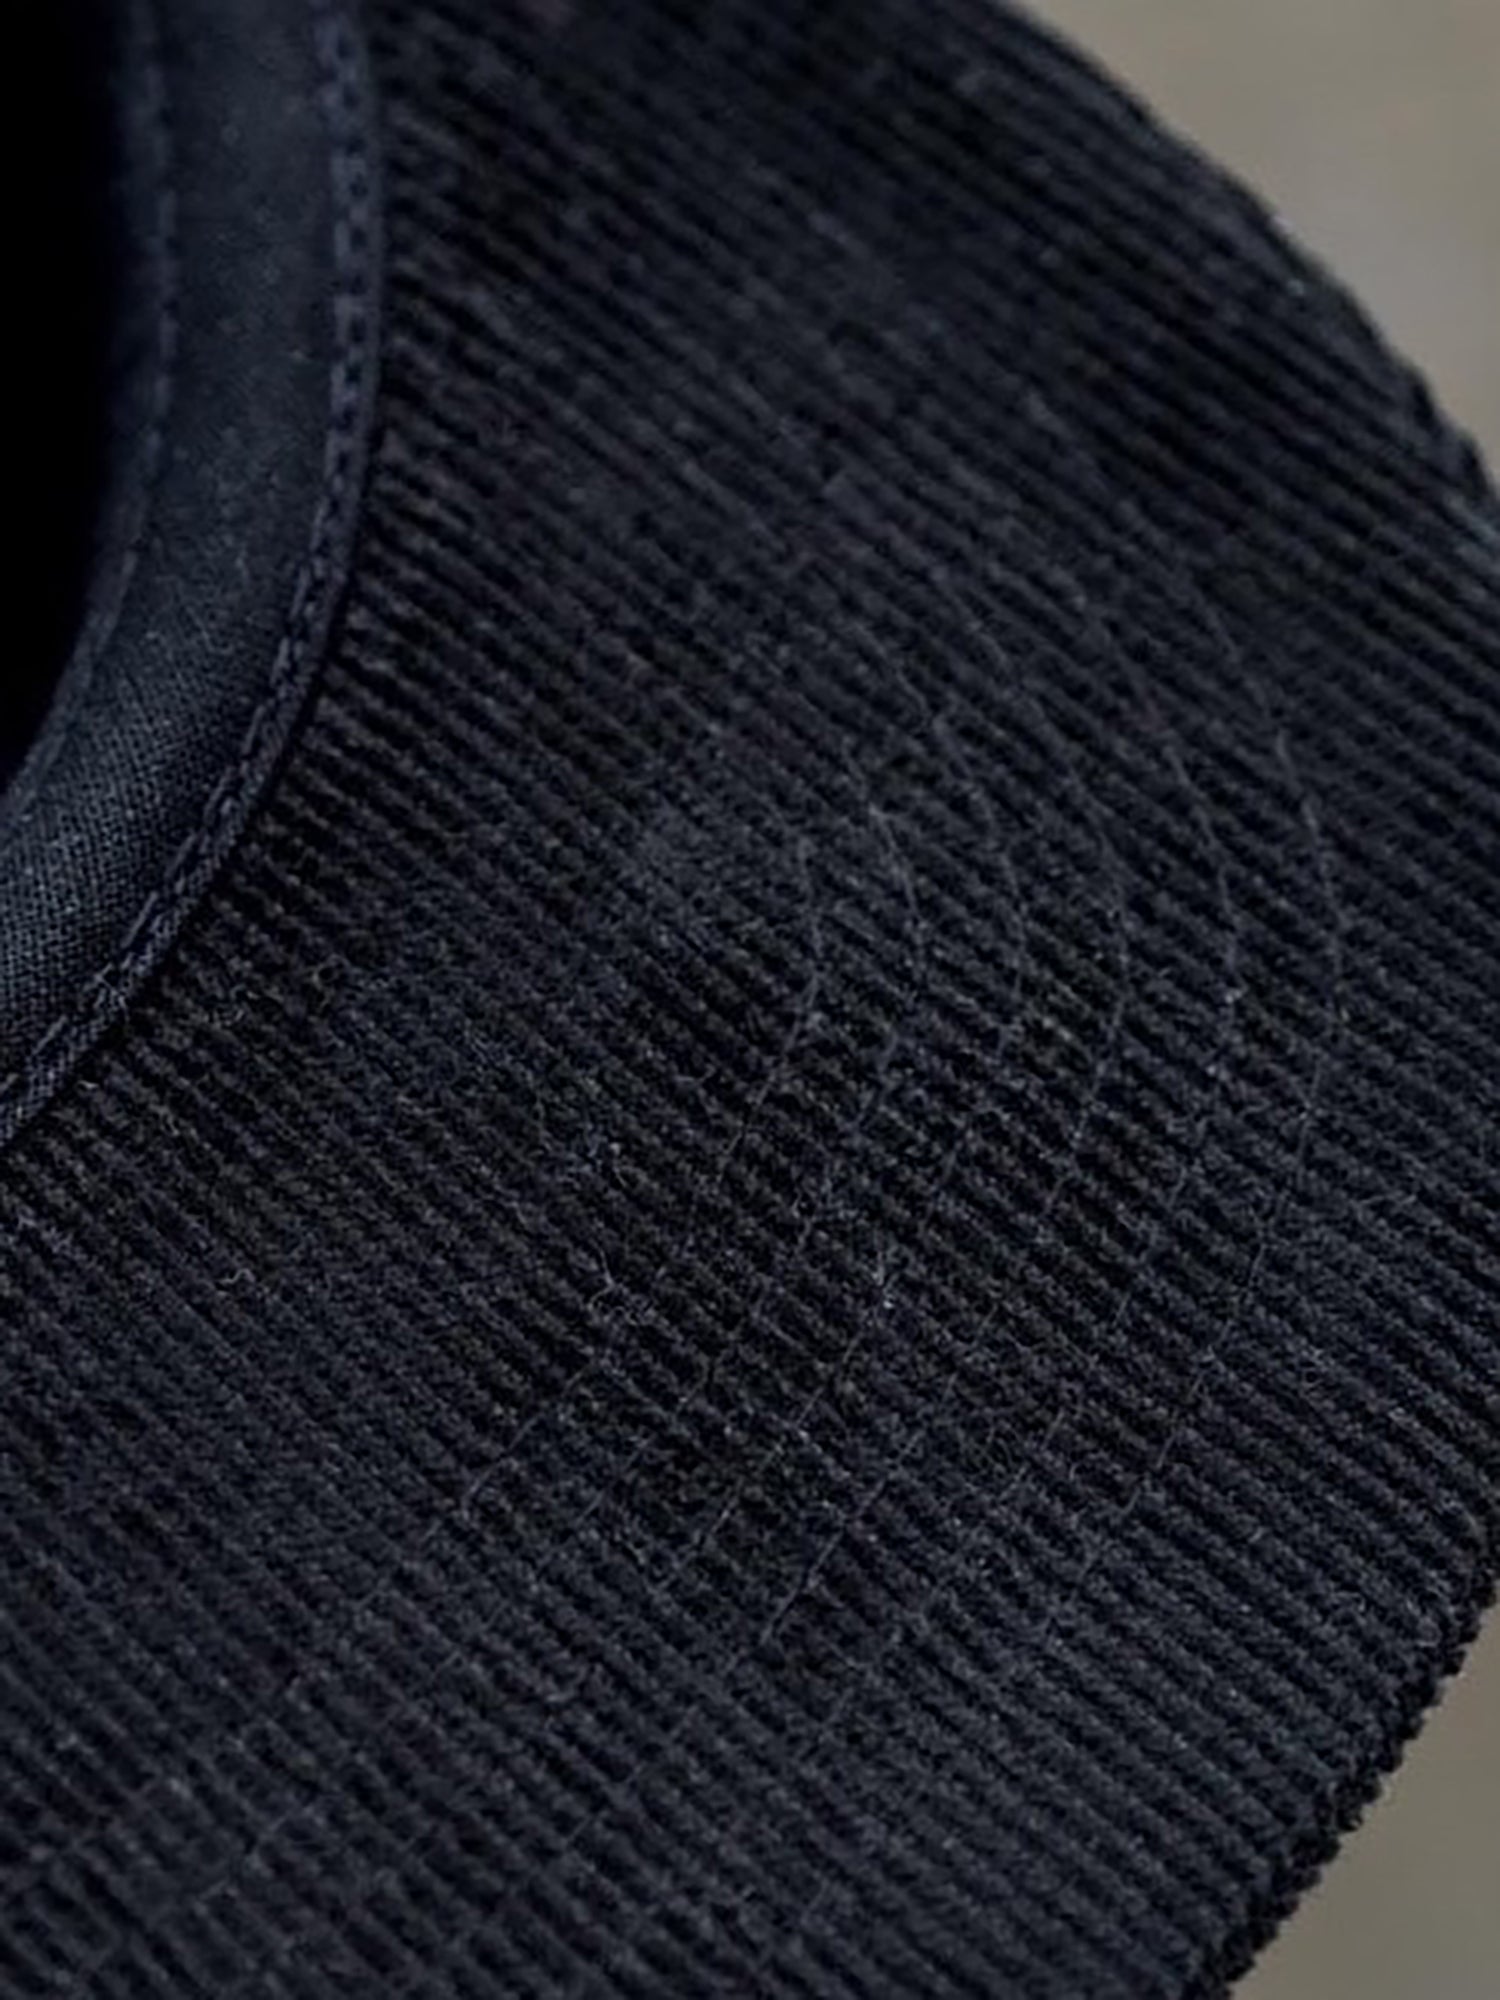 Cord Schirm unserer fux Cap in schwarz aus 100% Biobaumwolle